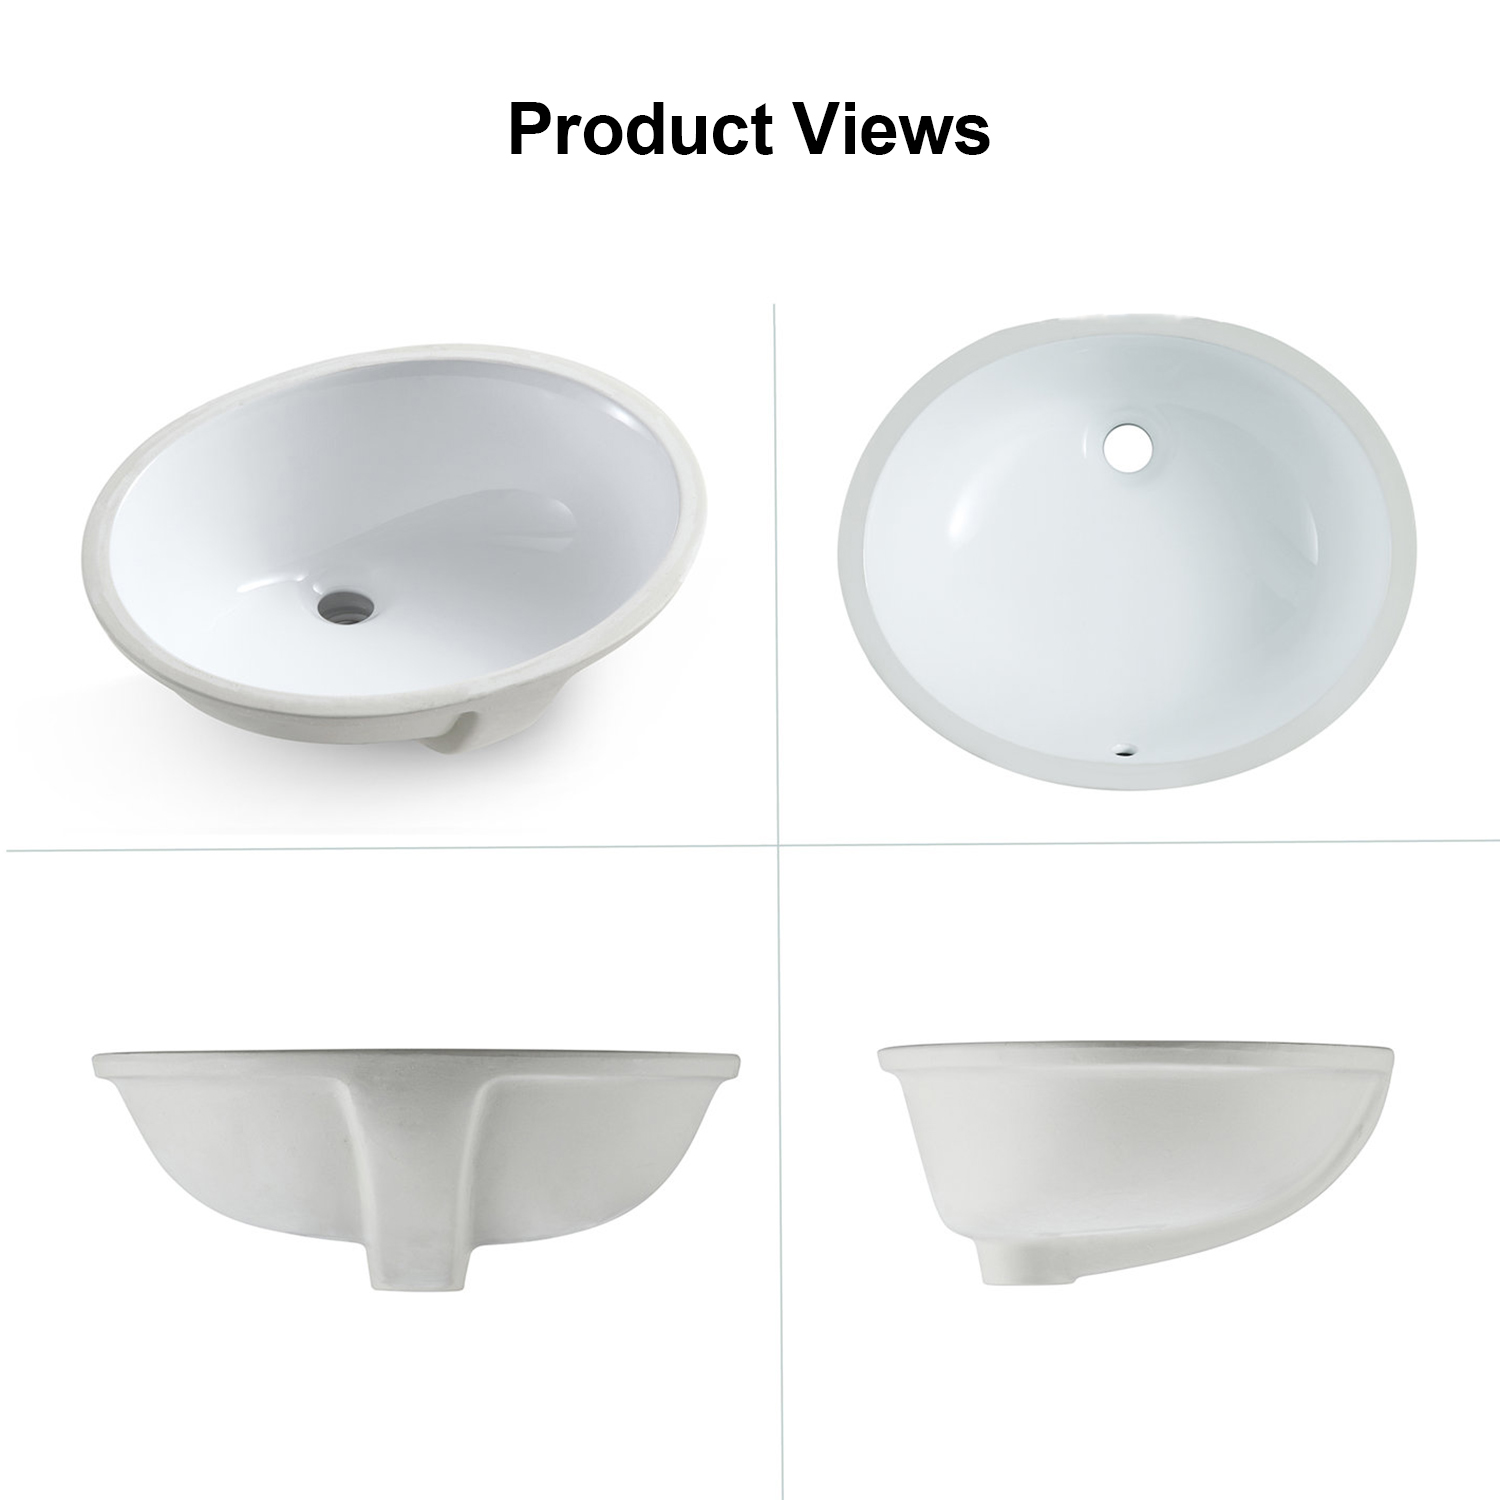 Lavabo ovalado del cuarto de baño del recipiente de cerámica de la vanidad de la porcelana esmaltada de Aquacubic